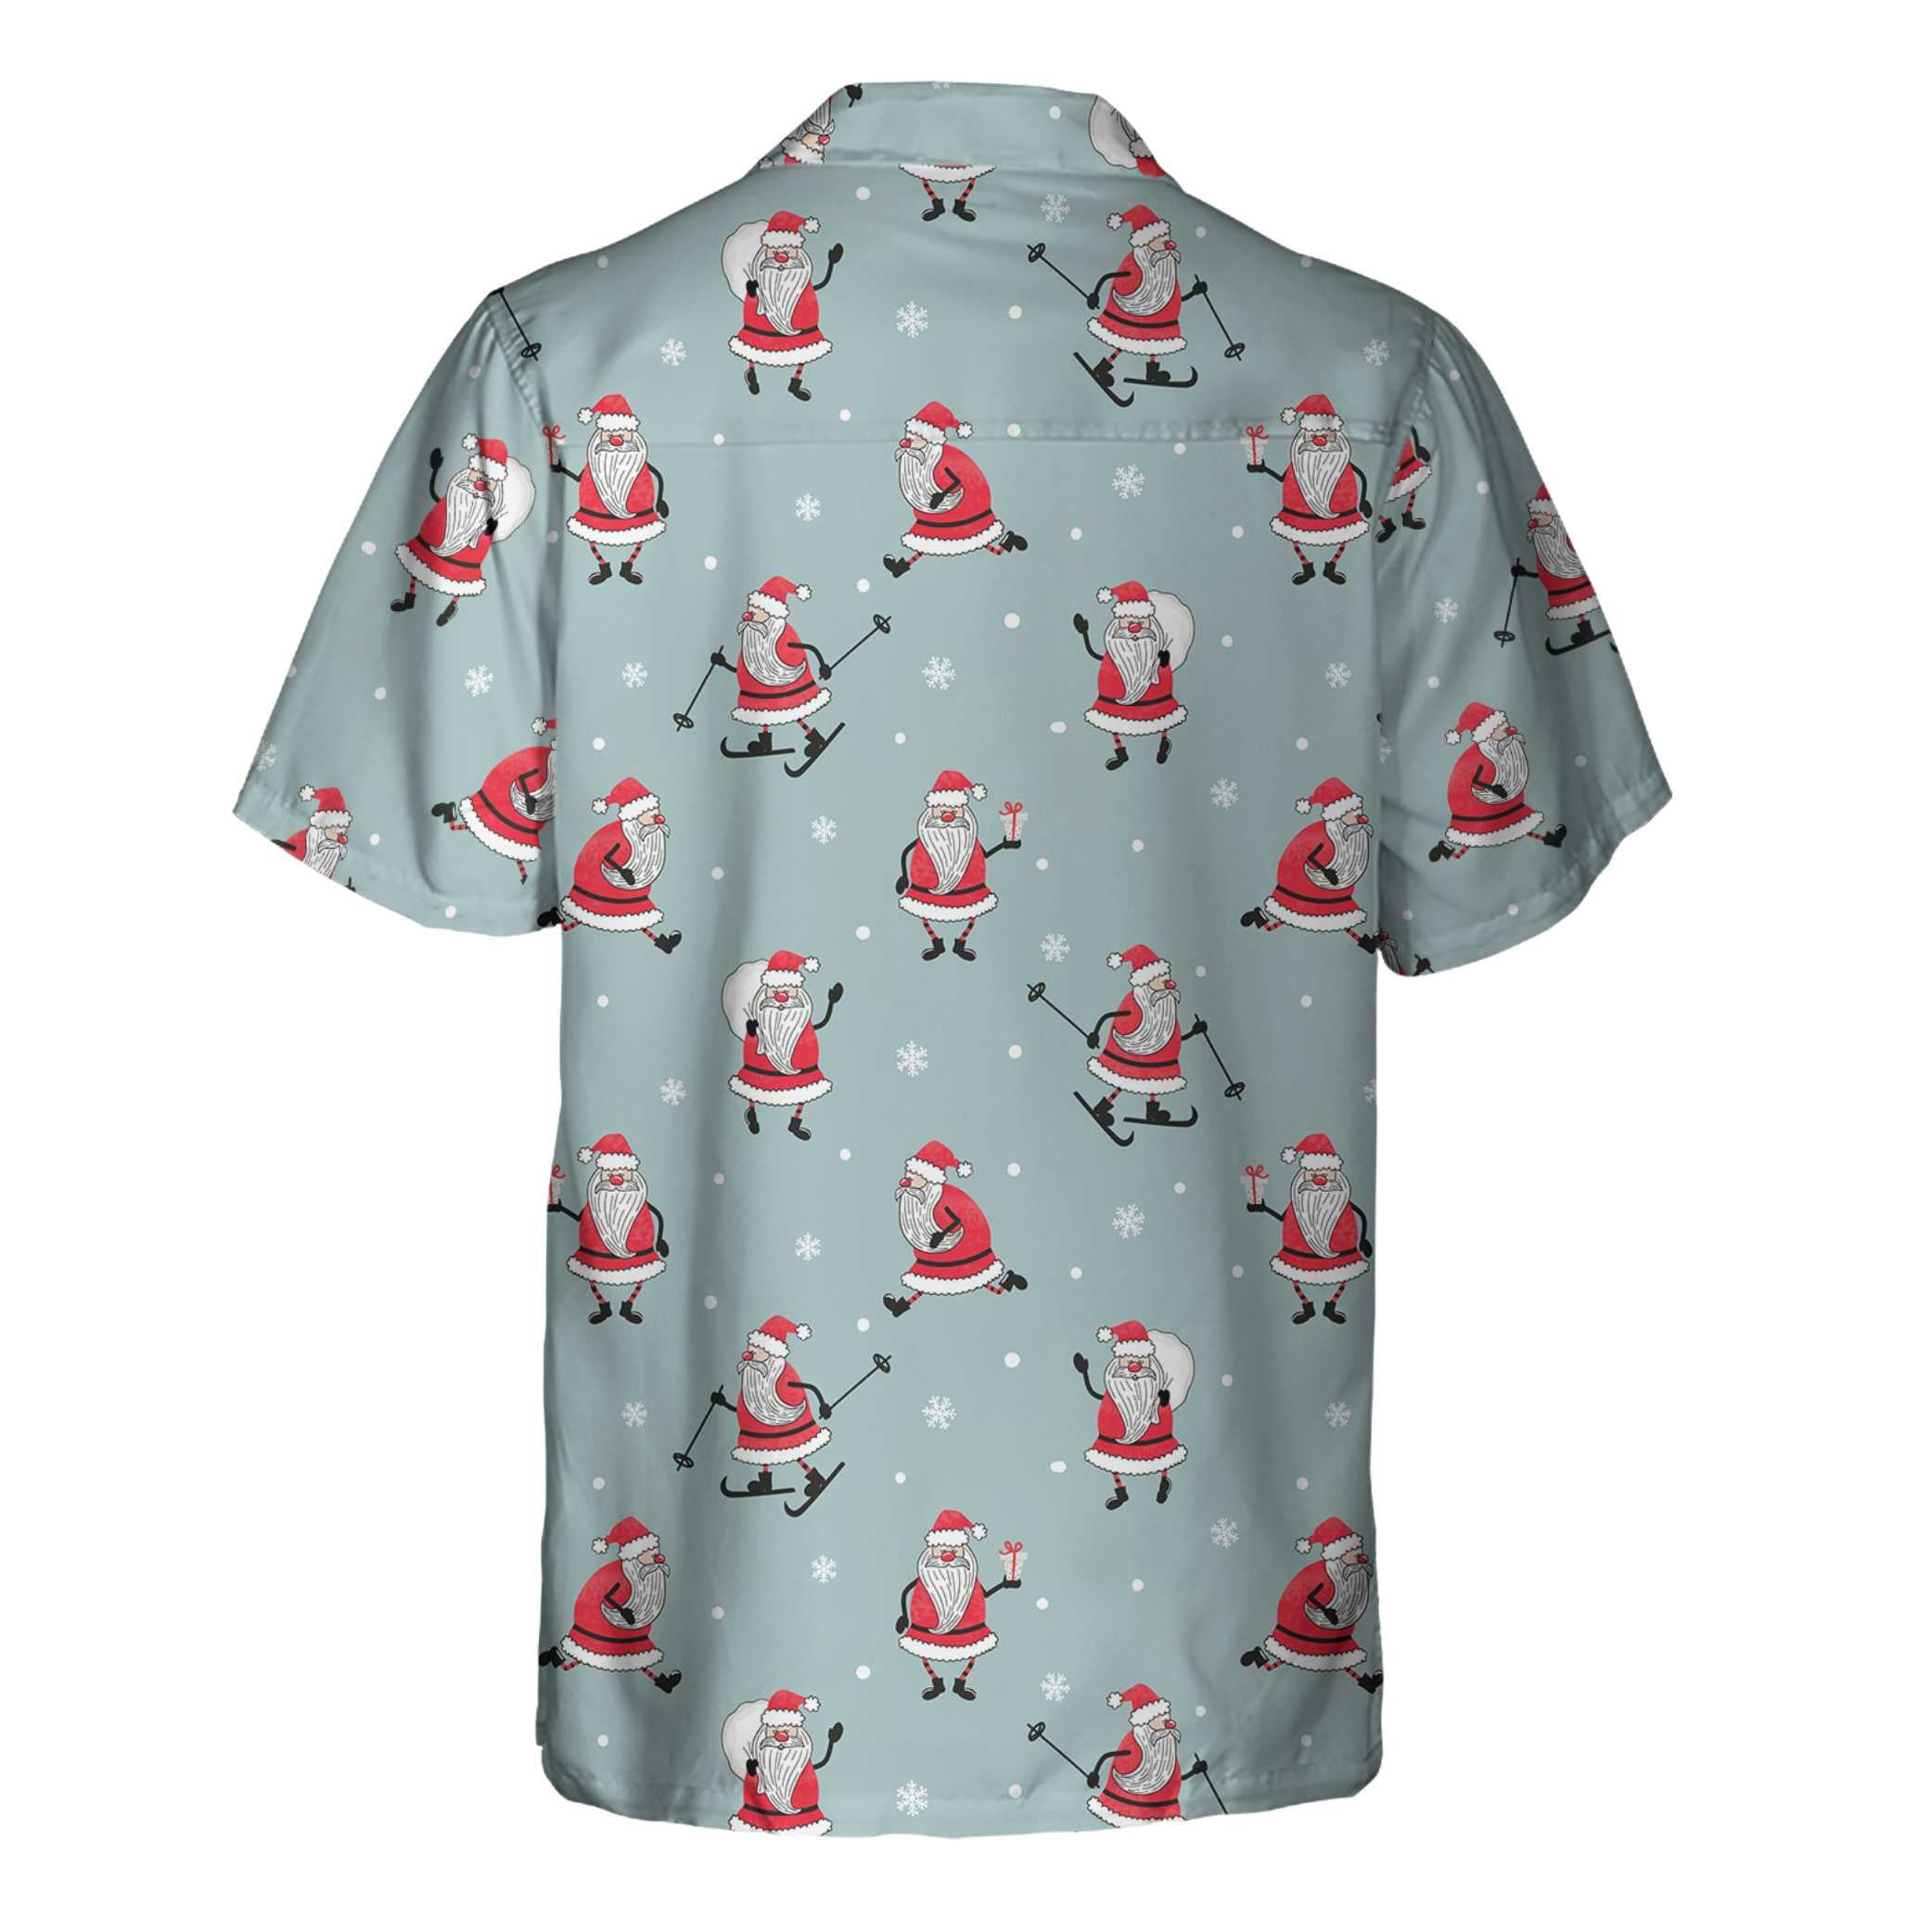 Funny Santa Claus Christmas Shirt For Men, Santa Claus Hawaiian Shirt